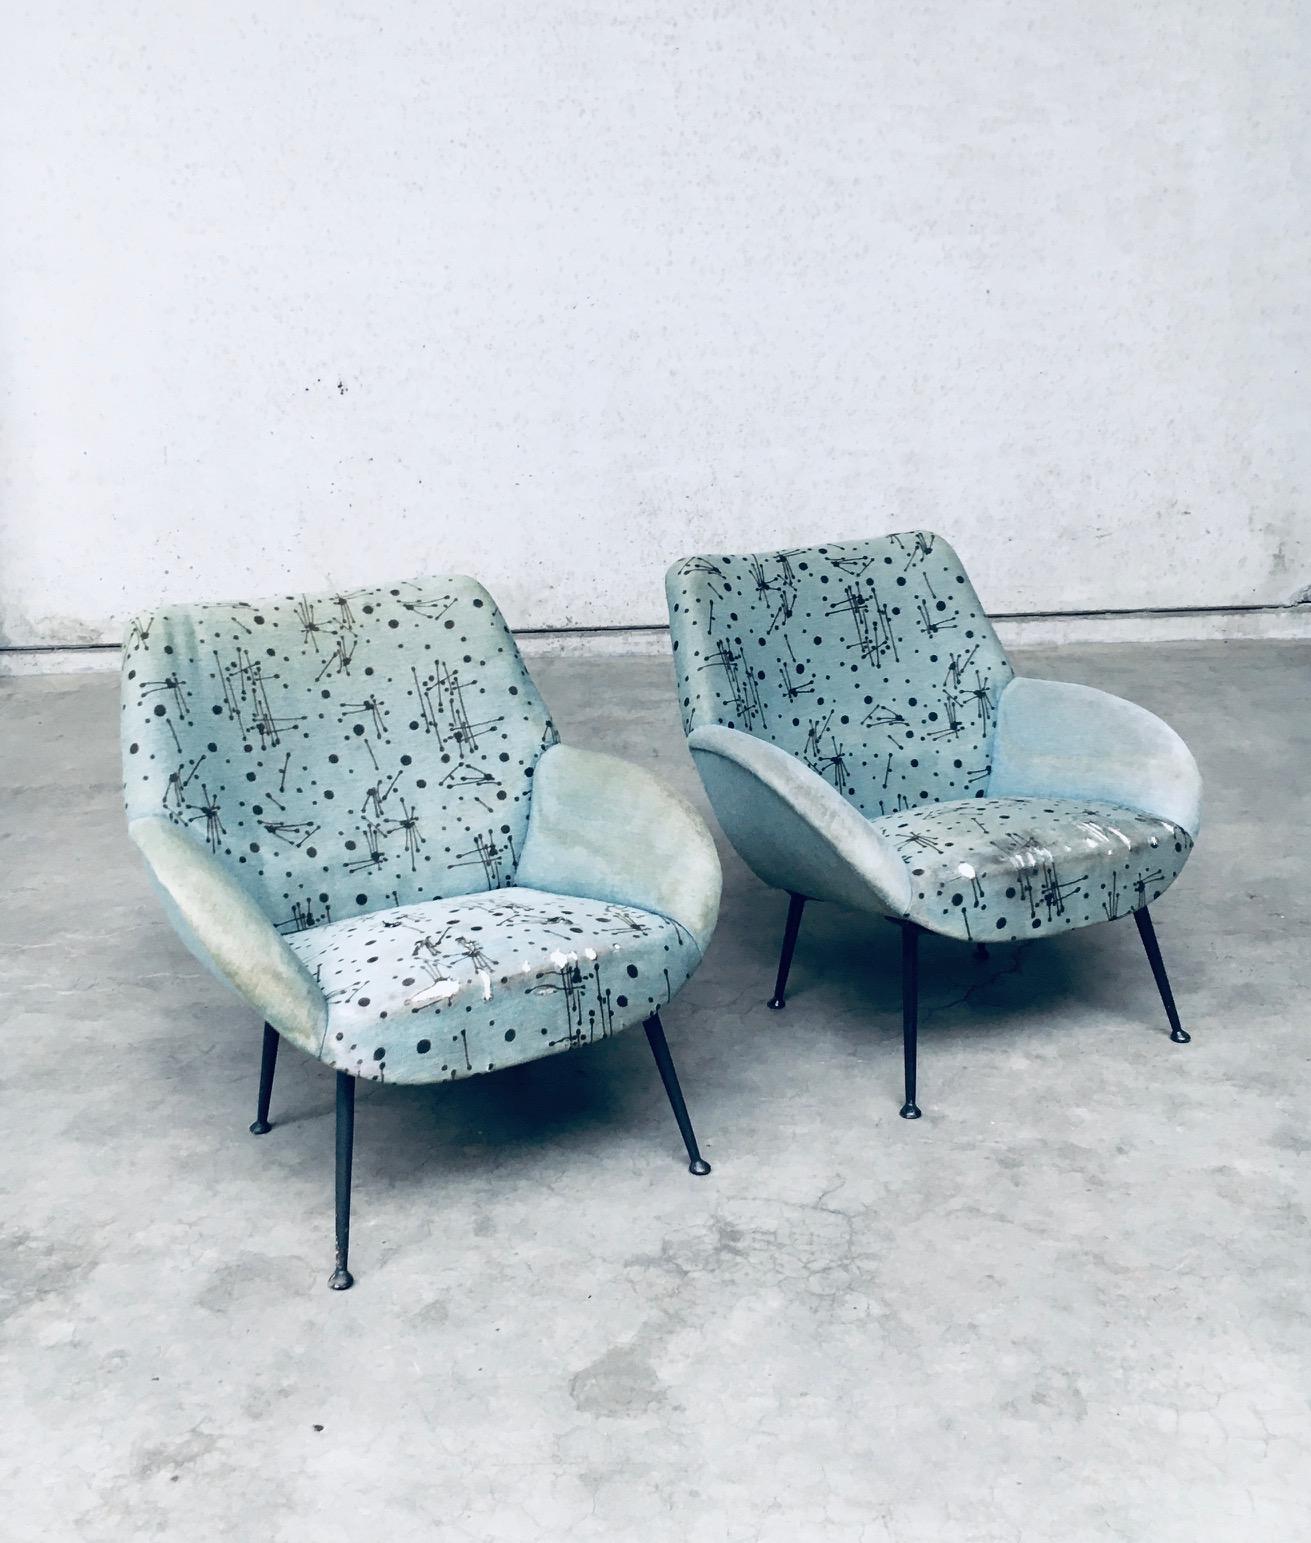 Vintage Midcentury Modern Dutch Design Model 121 Lounge Chair 2er-Set von Theo Ruth für Artifort. Hergestellt in den Niederlanden, 1956. Alle originalen Sessel mit originalem 'Atomic' 'Space Age' Stoff auf beiden Stühlen. Konische Beine aus